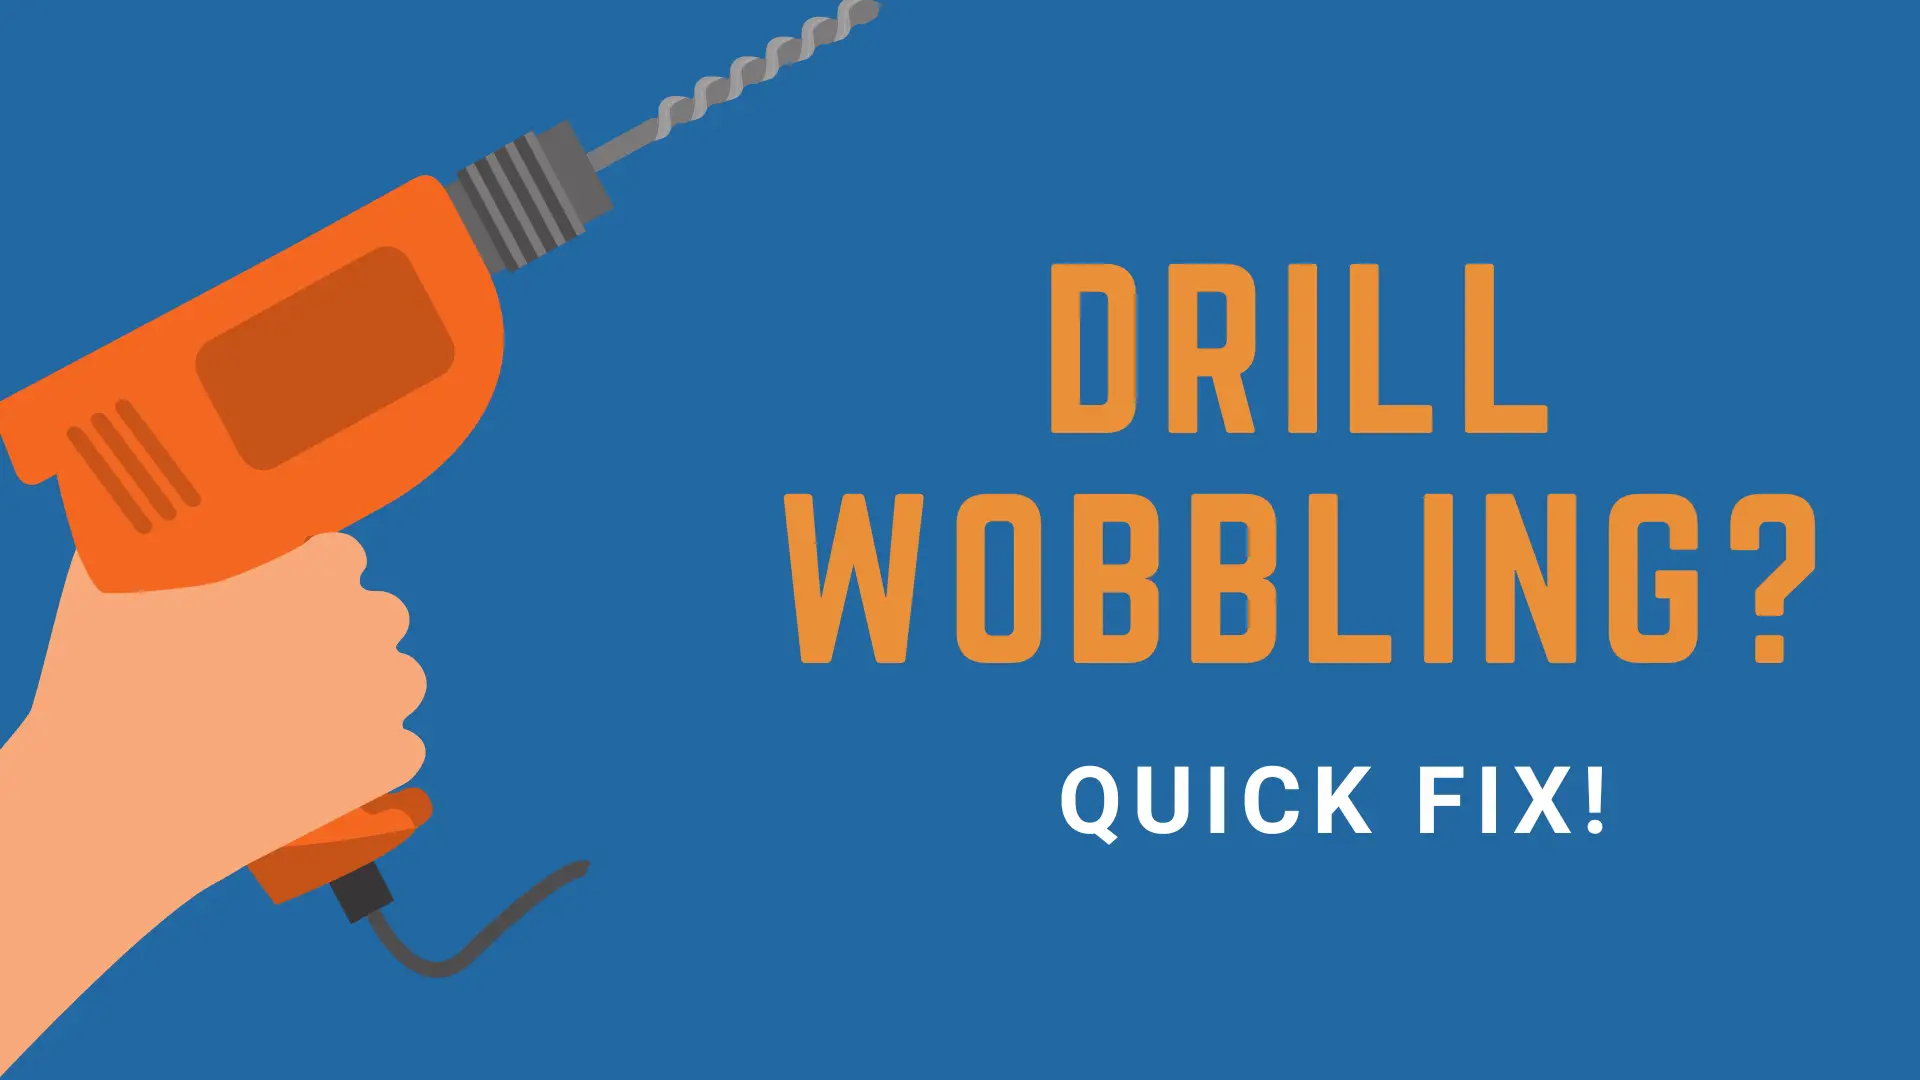 drill wobble